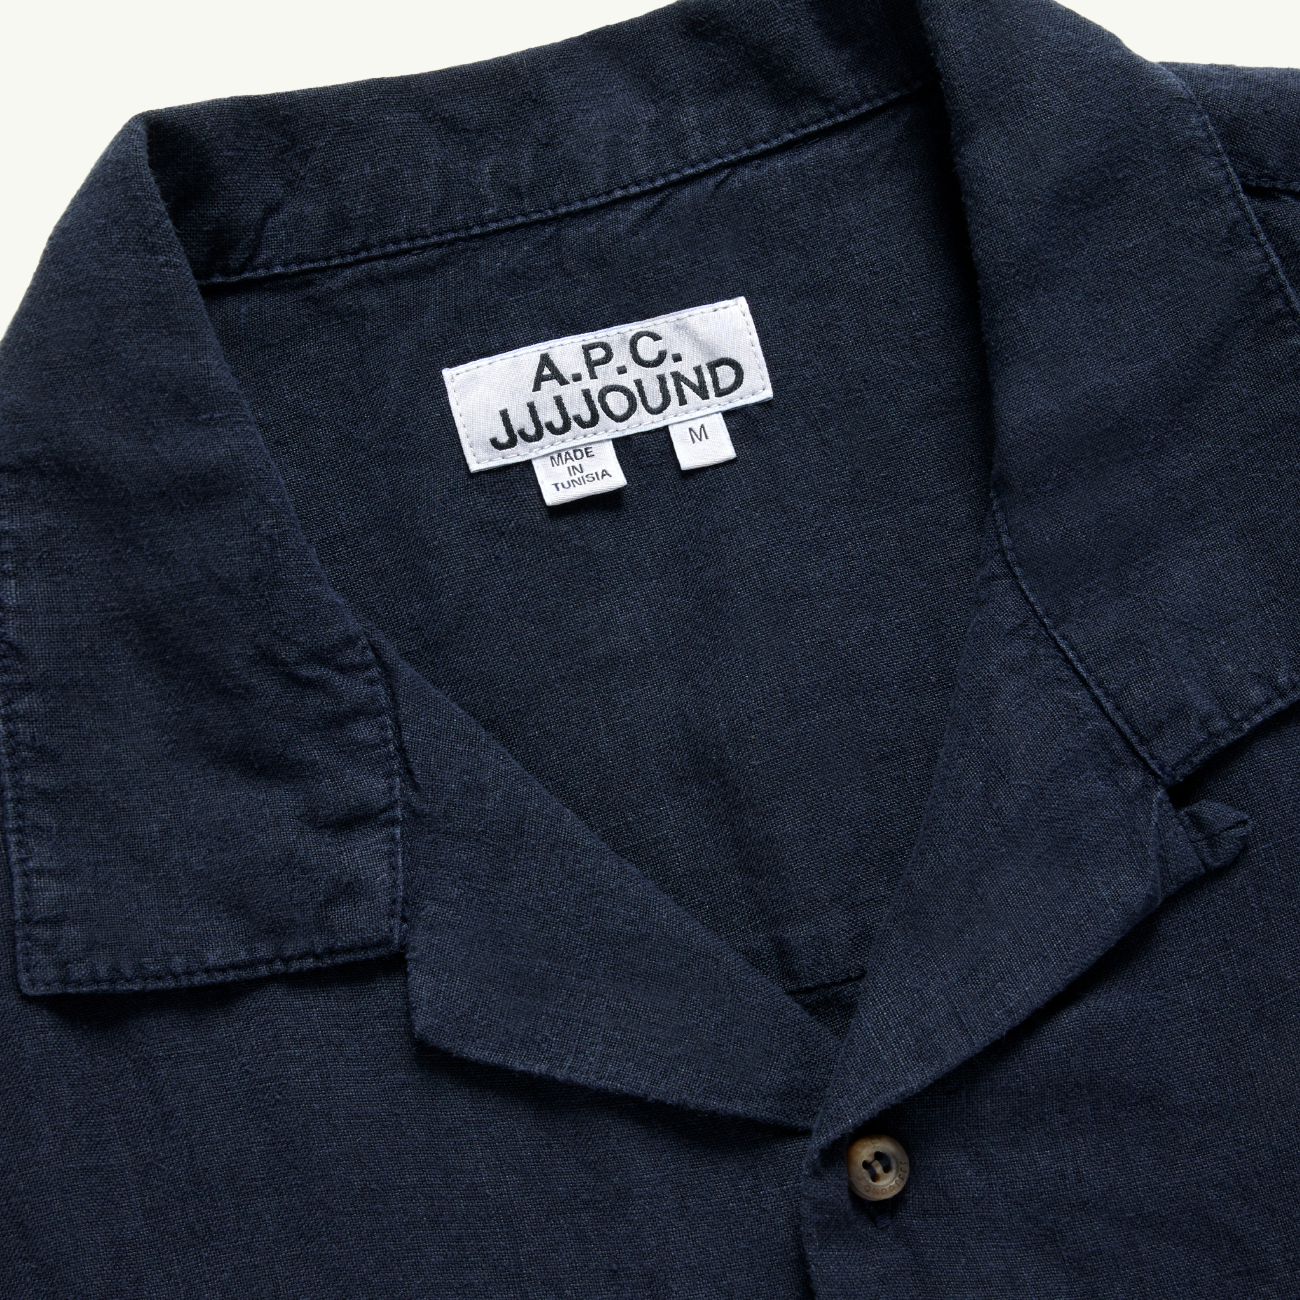 A.P.C. x JJJJound Weekend Button Up Shirt - Dark Navy